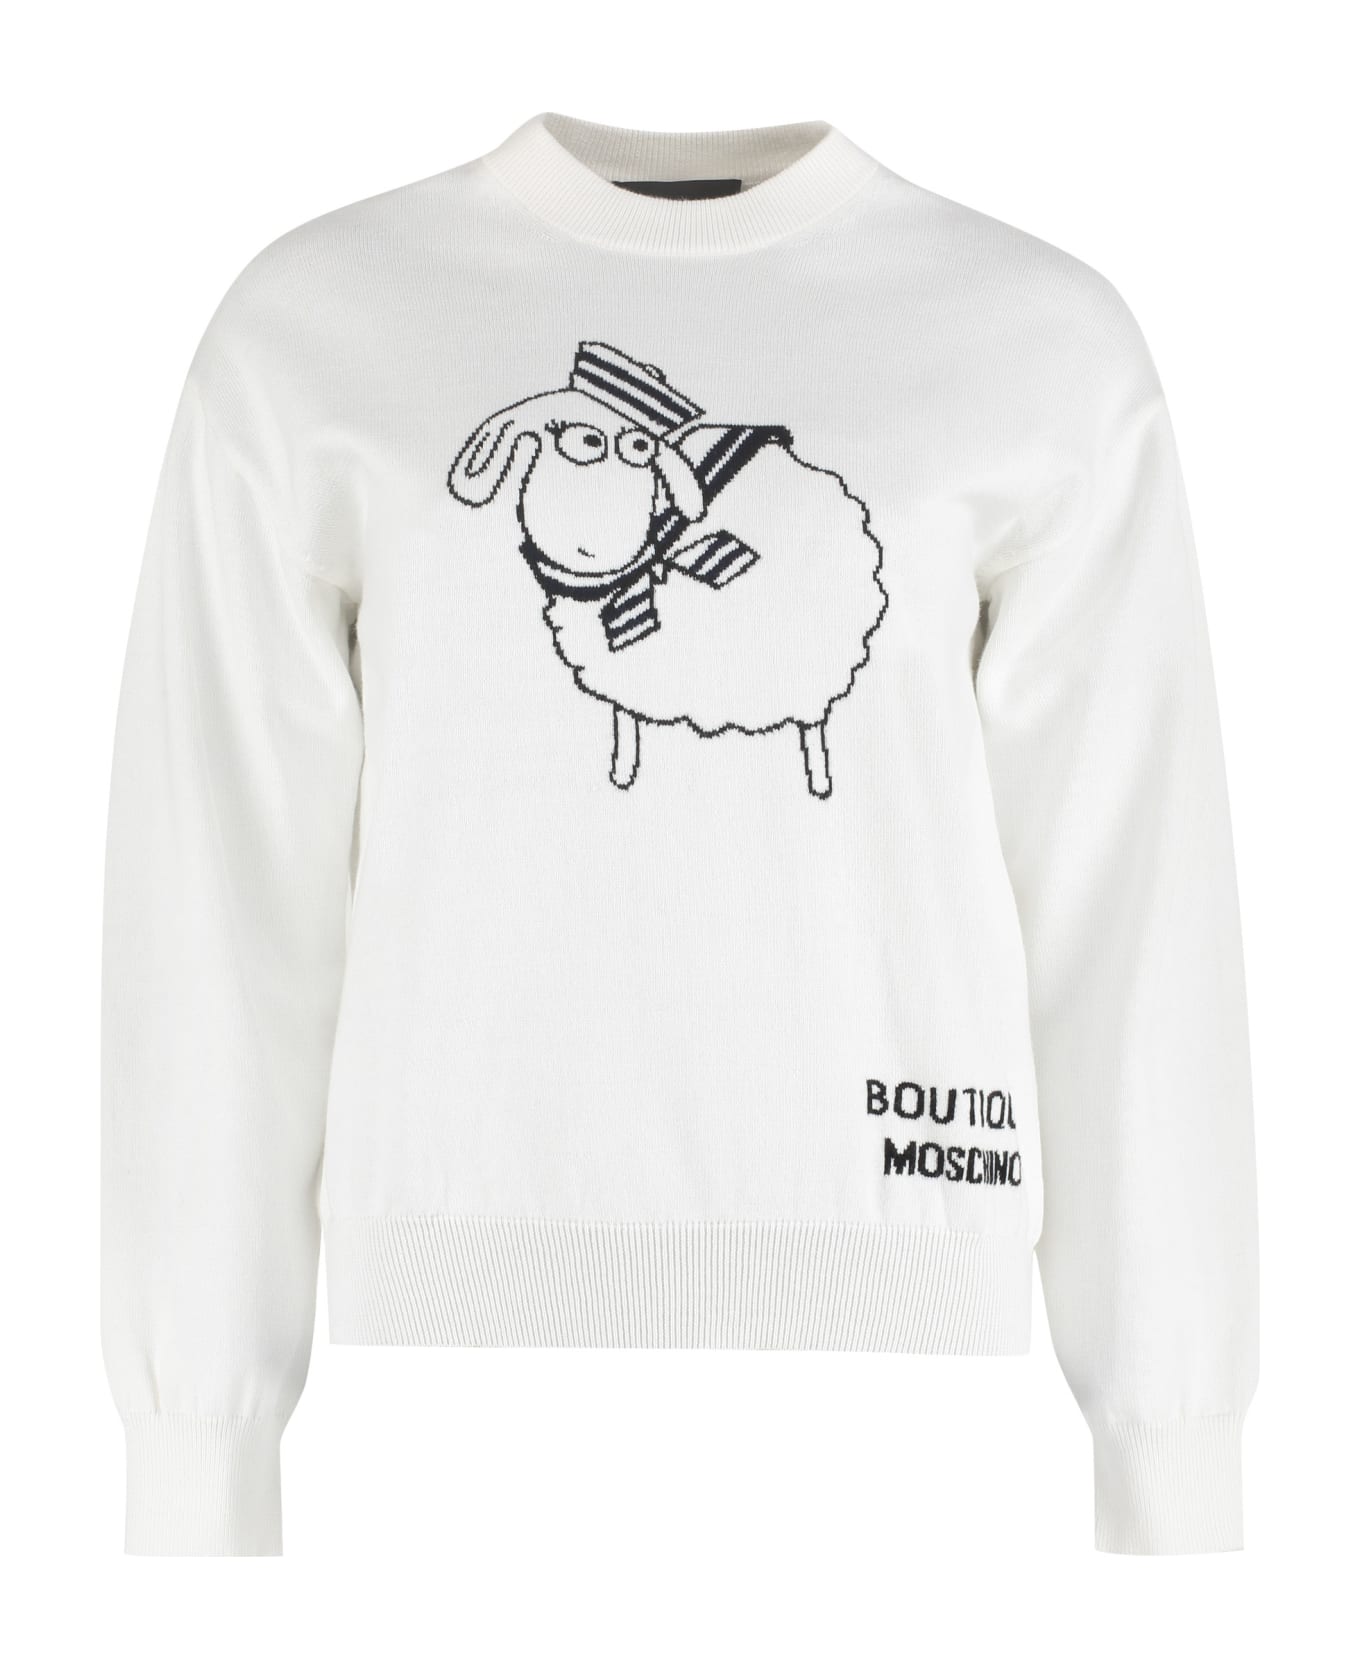 Boutique Moschino Cotton-cashmere Blend Crew-neck Pullover - White